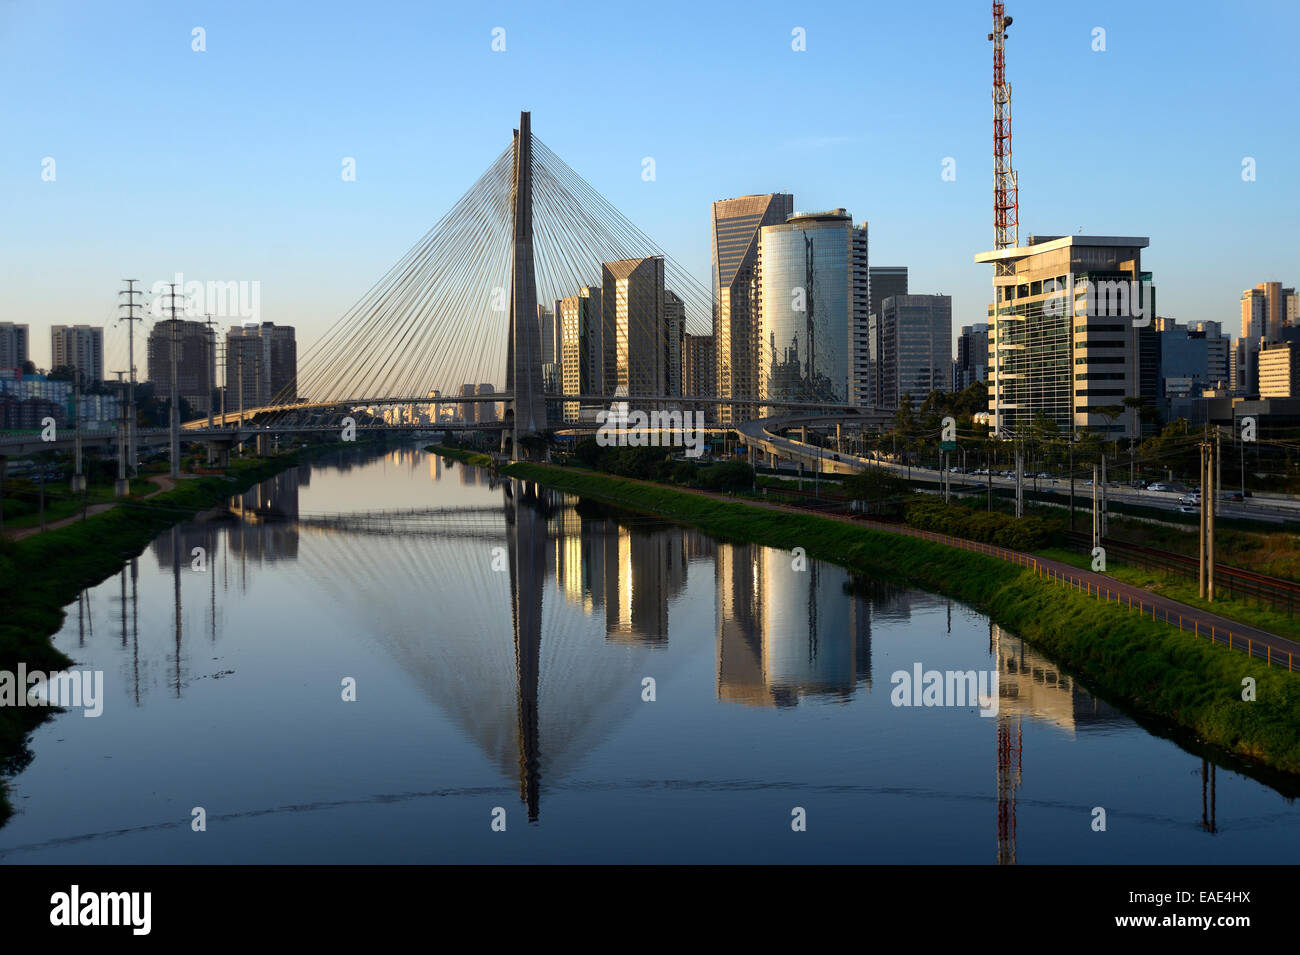 Les gratte-ciel modernes et l'Octávio Frias de Oliveira pont sur le Rio Pinheiros, Morumbi, São Paulo, São Paulo Banque D'Images